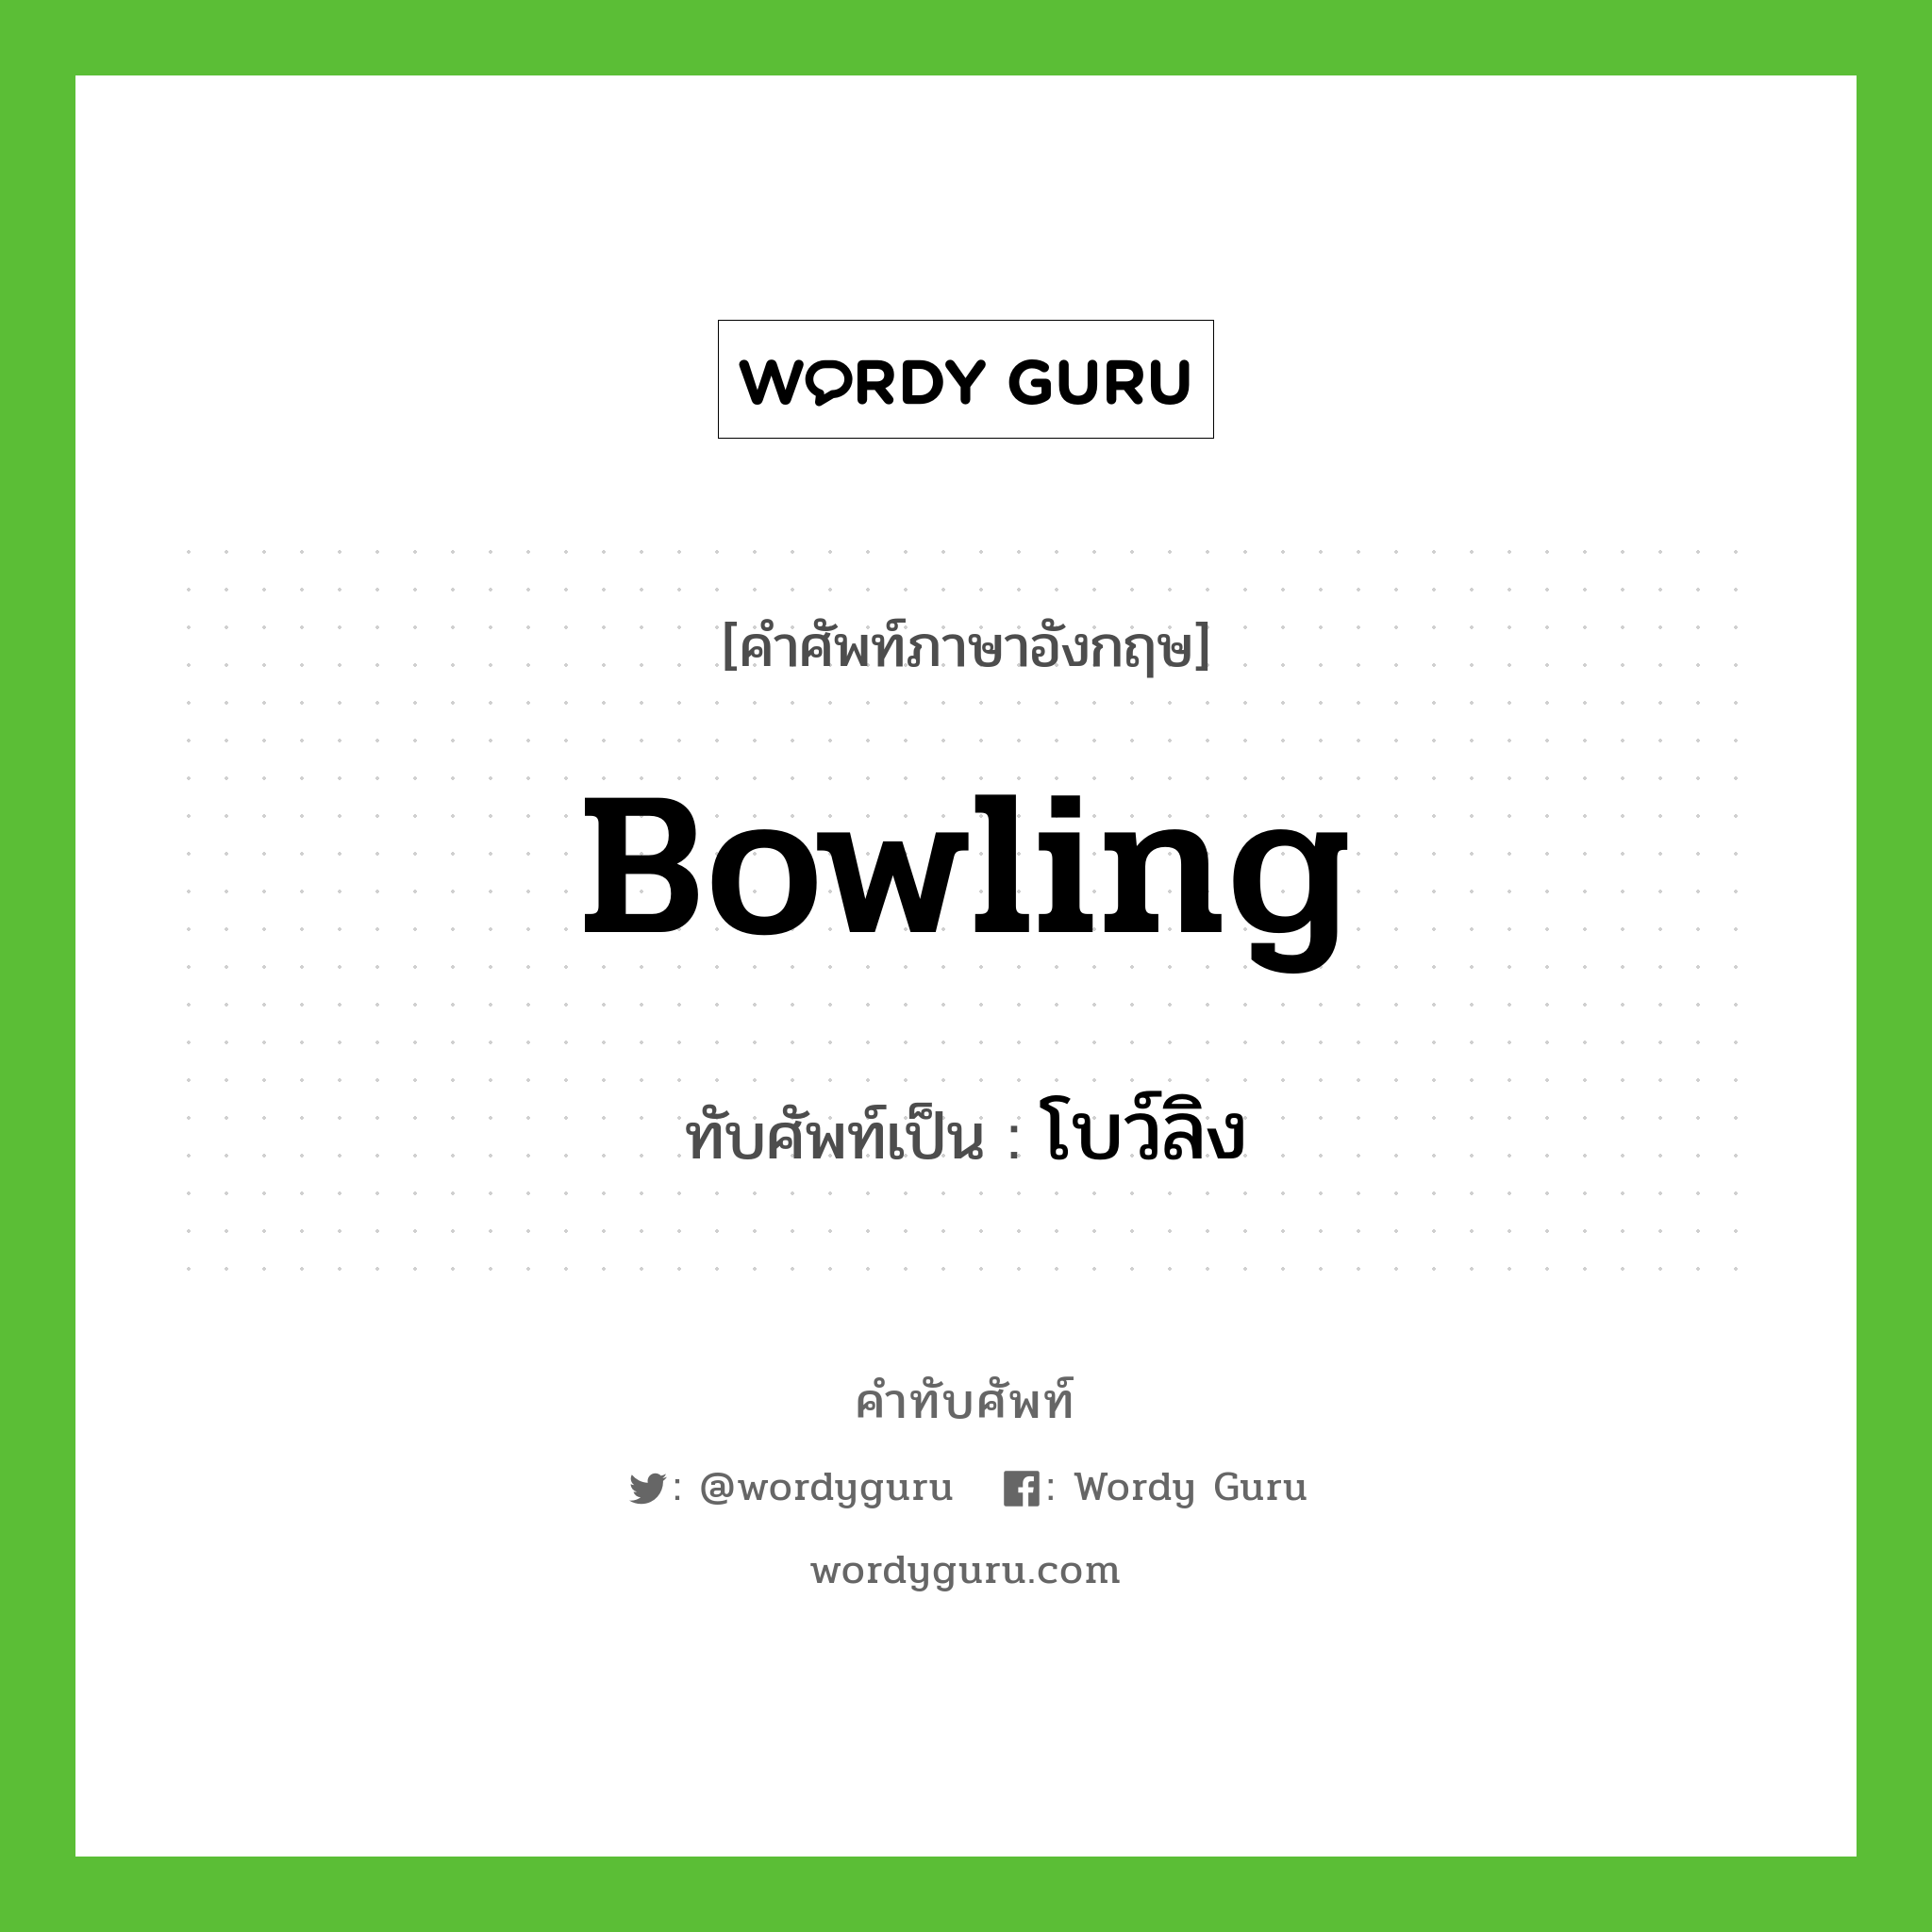 bowling เขียนเป็นคำไทยว่าอะไร?, คำศัพท์ภาษาอังกฤษ bowling ทับศัพท์เป็น โบว์ลิง